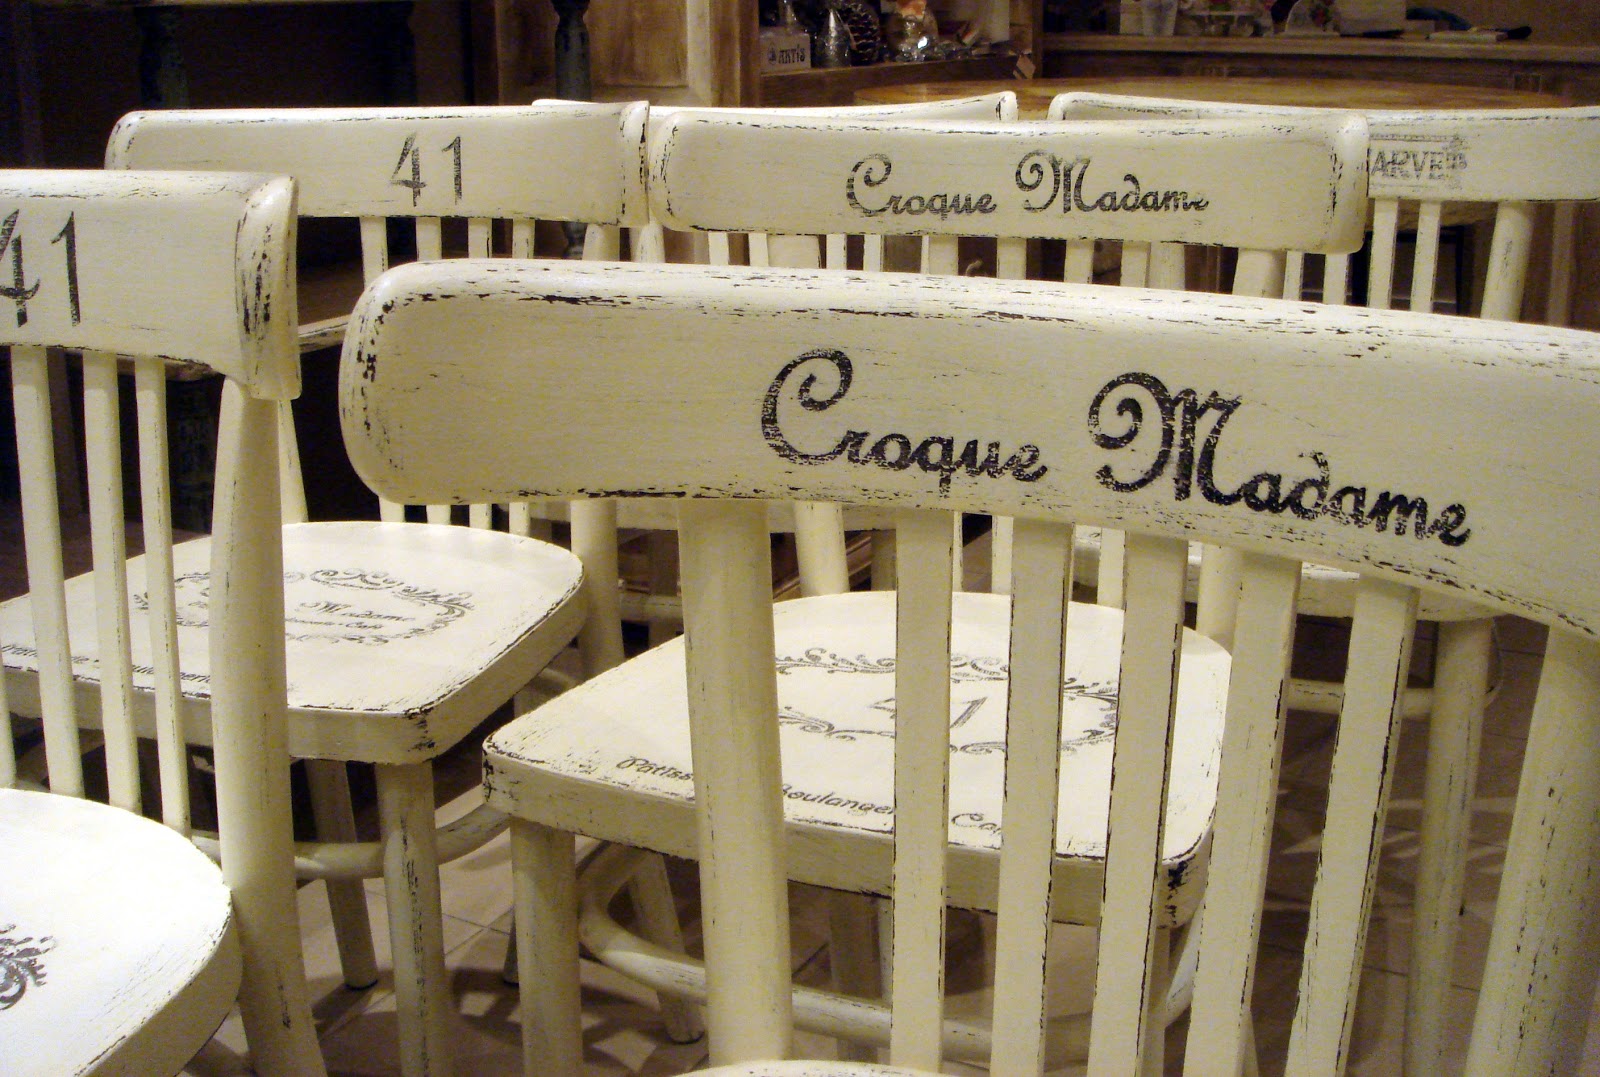 Krzesła dla Croque Madame